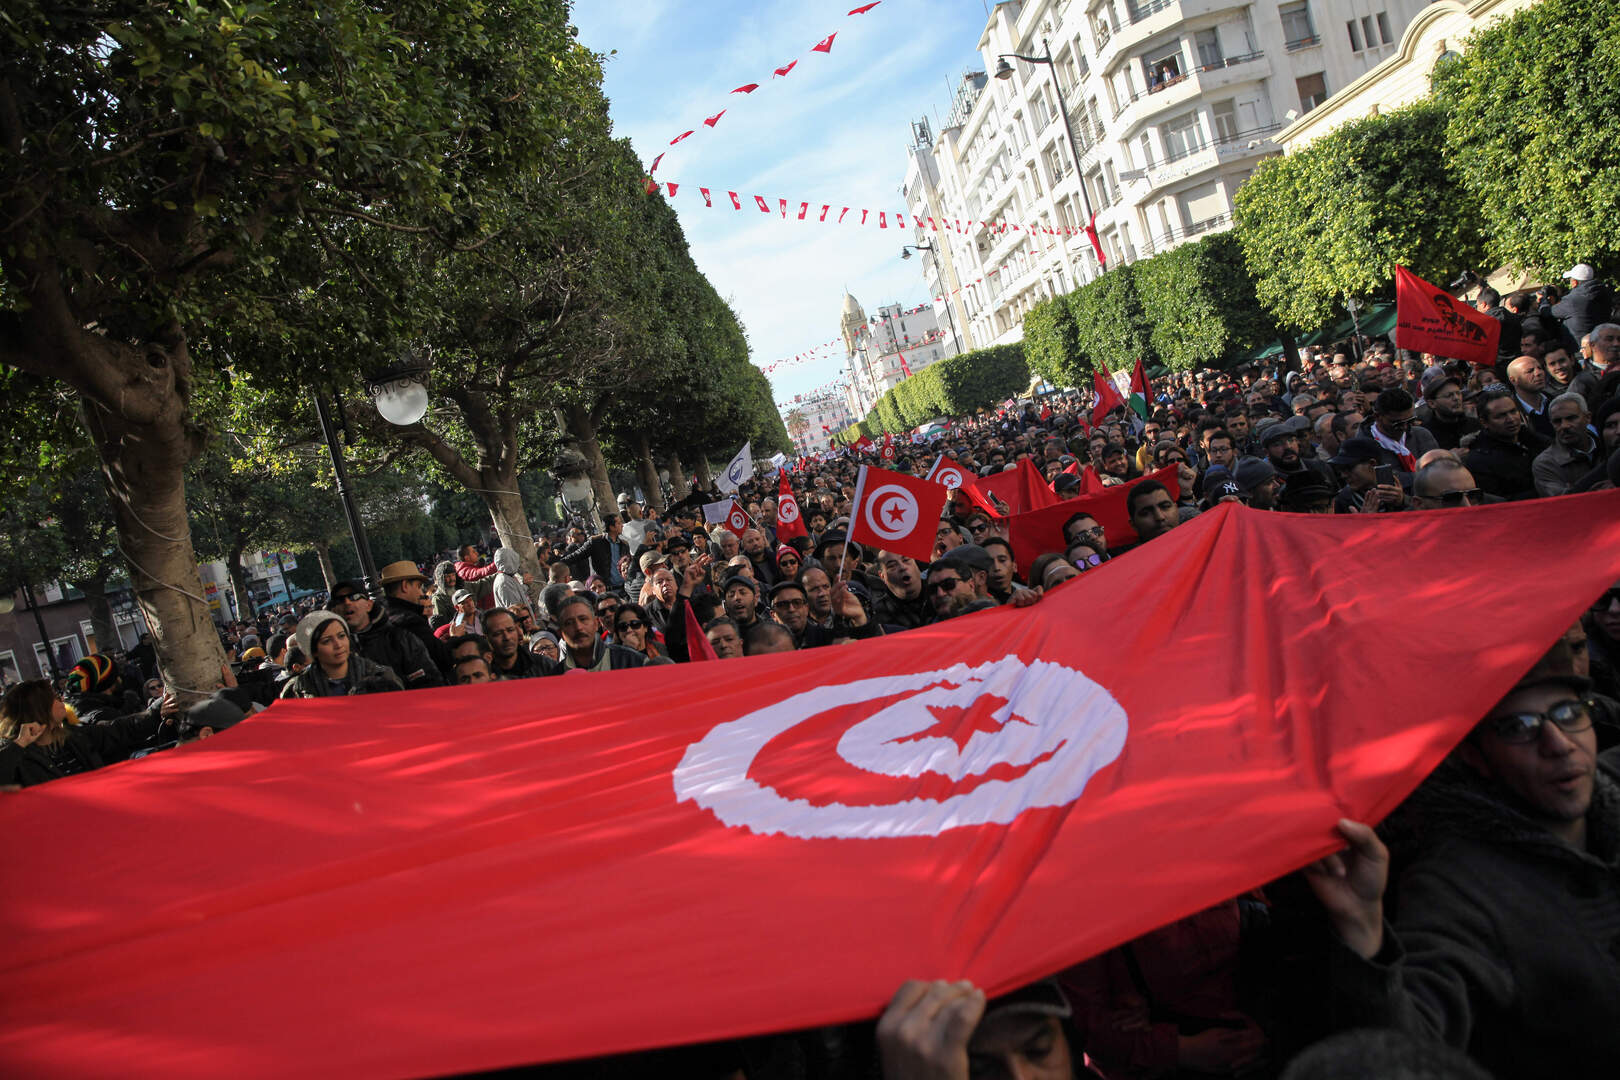 تونس.. أعمال شغب تكشف عن 5 أجنة غير مكتملة النمو فوق سطح عيادة طبية